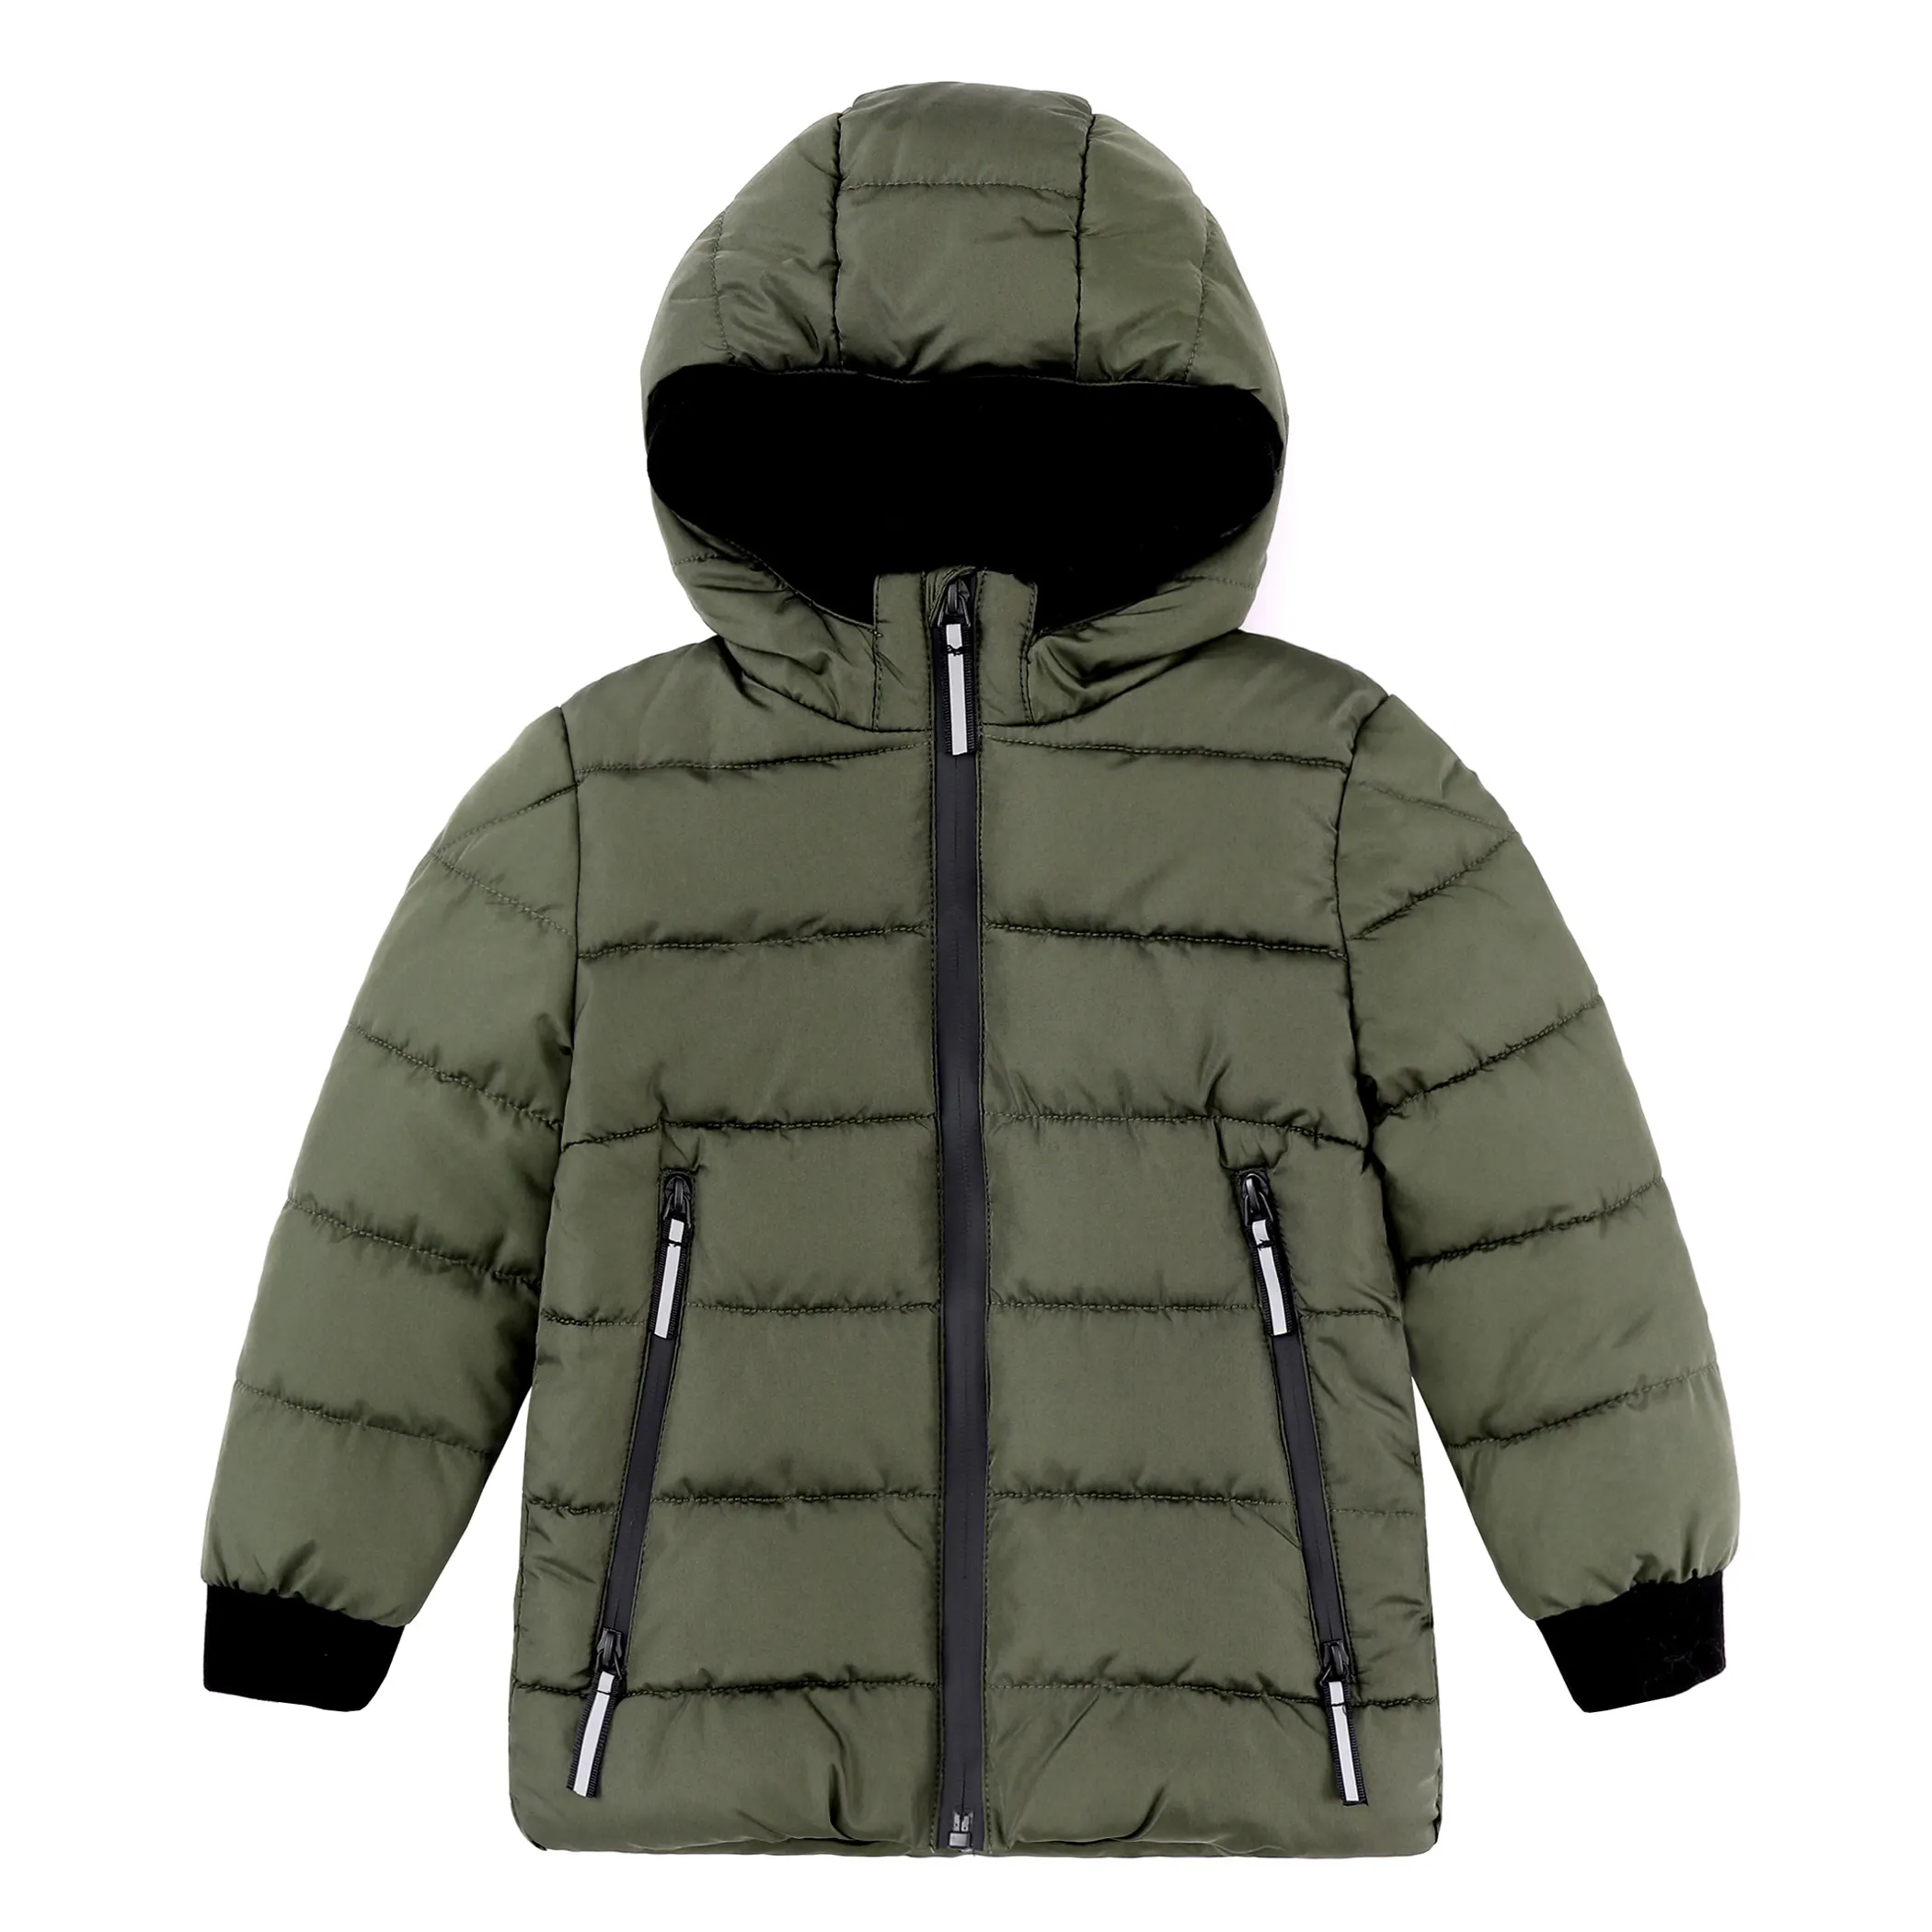 Vente en gros Manteaux d'hiver personnalisés pour garçons et filles Vestes bouffantes rembourrées imperméables avec doublure polaire isolée Vêtements d'extérieur pour enfants